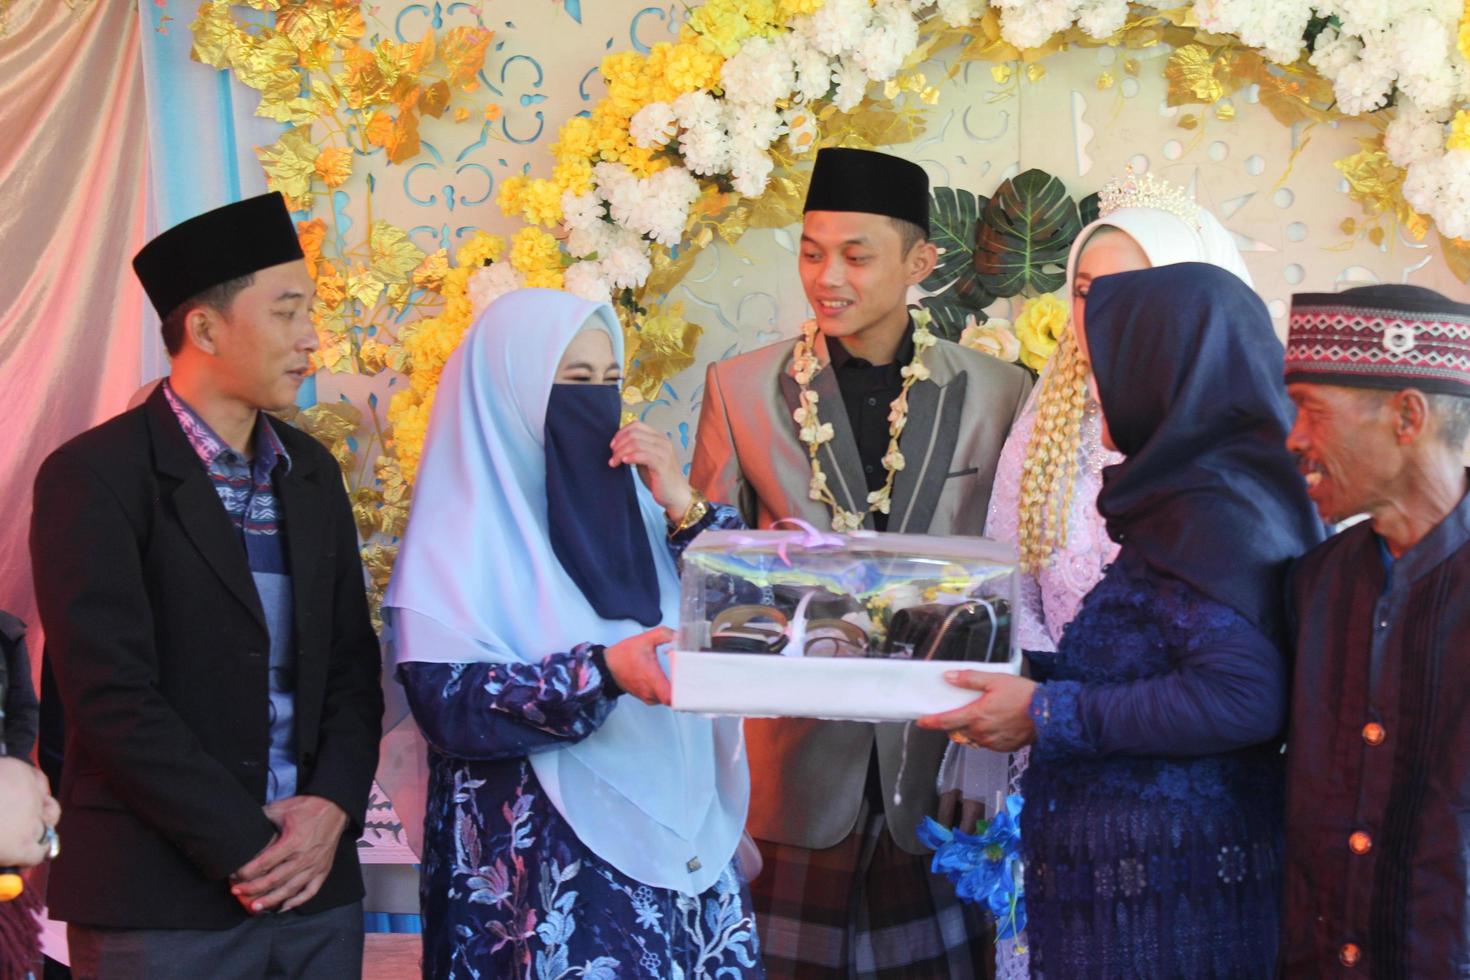 regencia de cianjur, java occidental, indonesia el 12 de junio de 2021, la cultura de las ofrendas en el matrimonio. cultura matrimonial de los musulmanes de indonesia foto